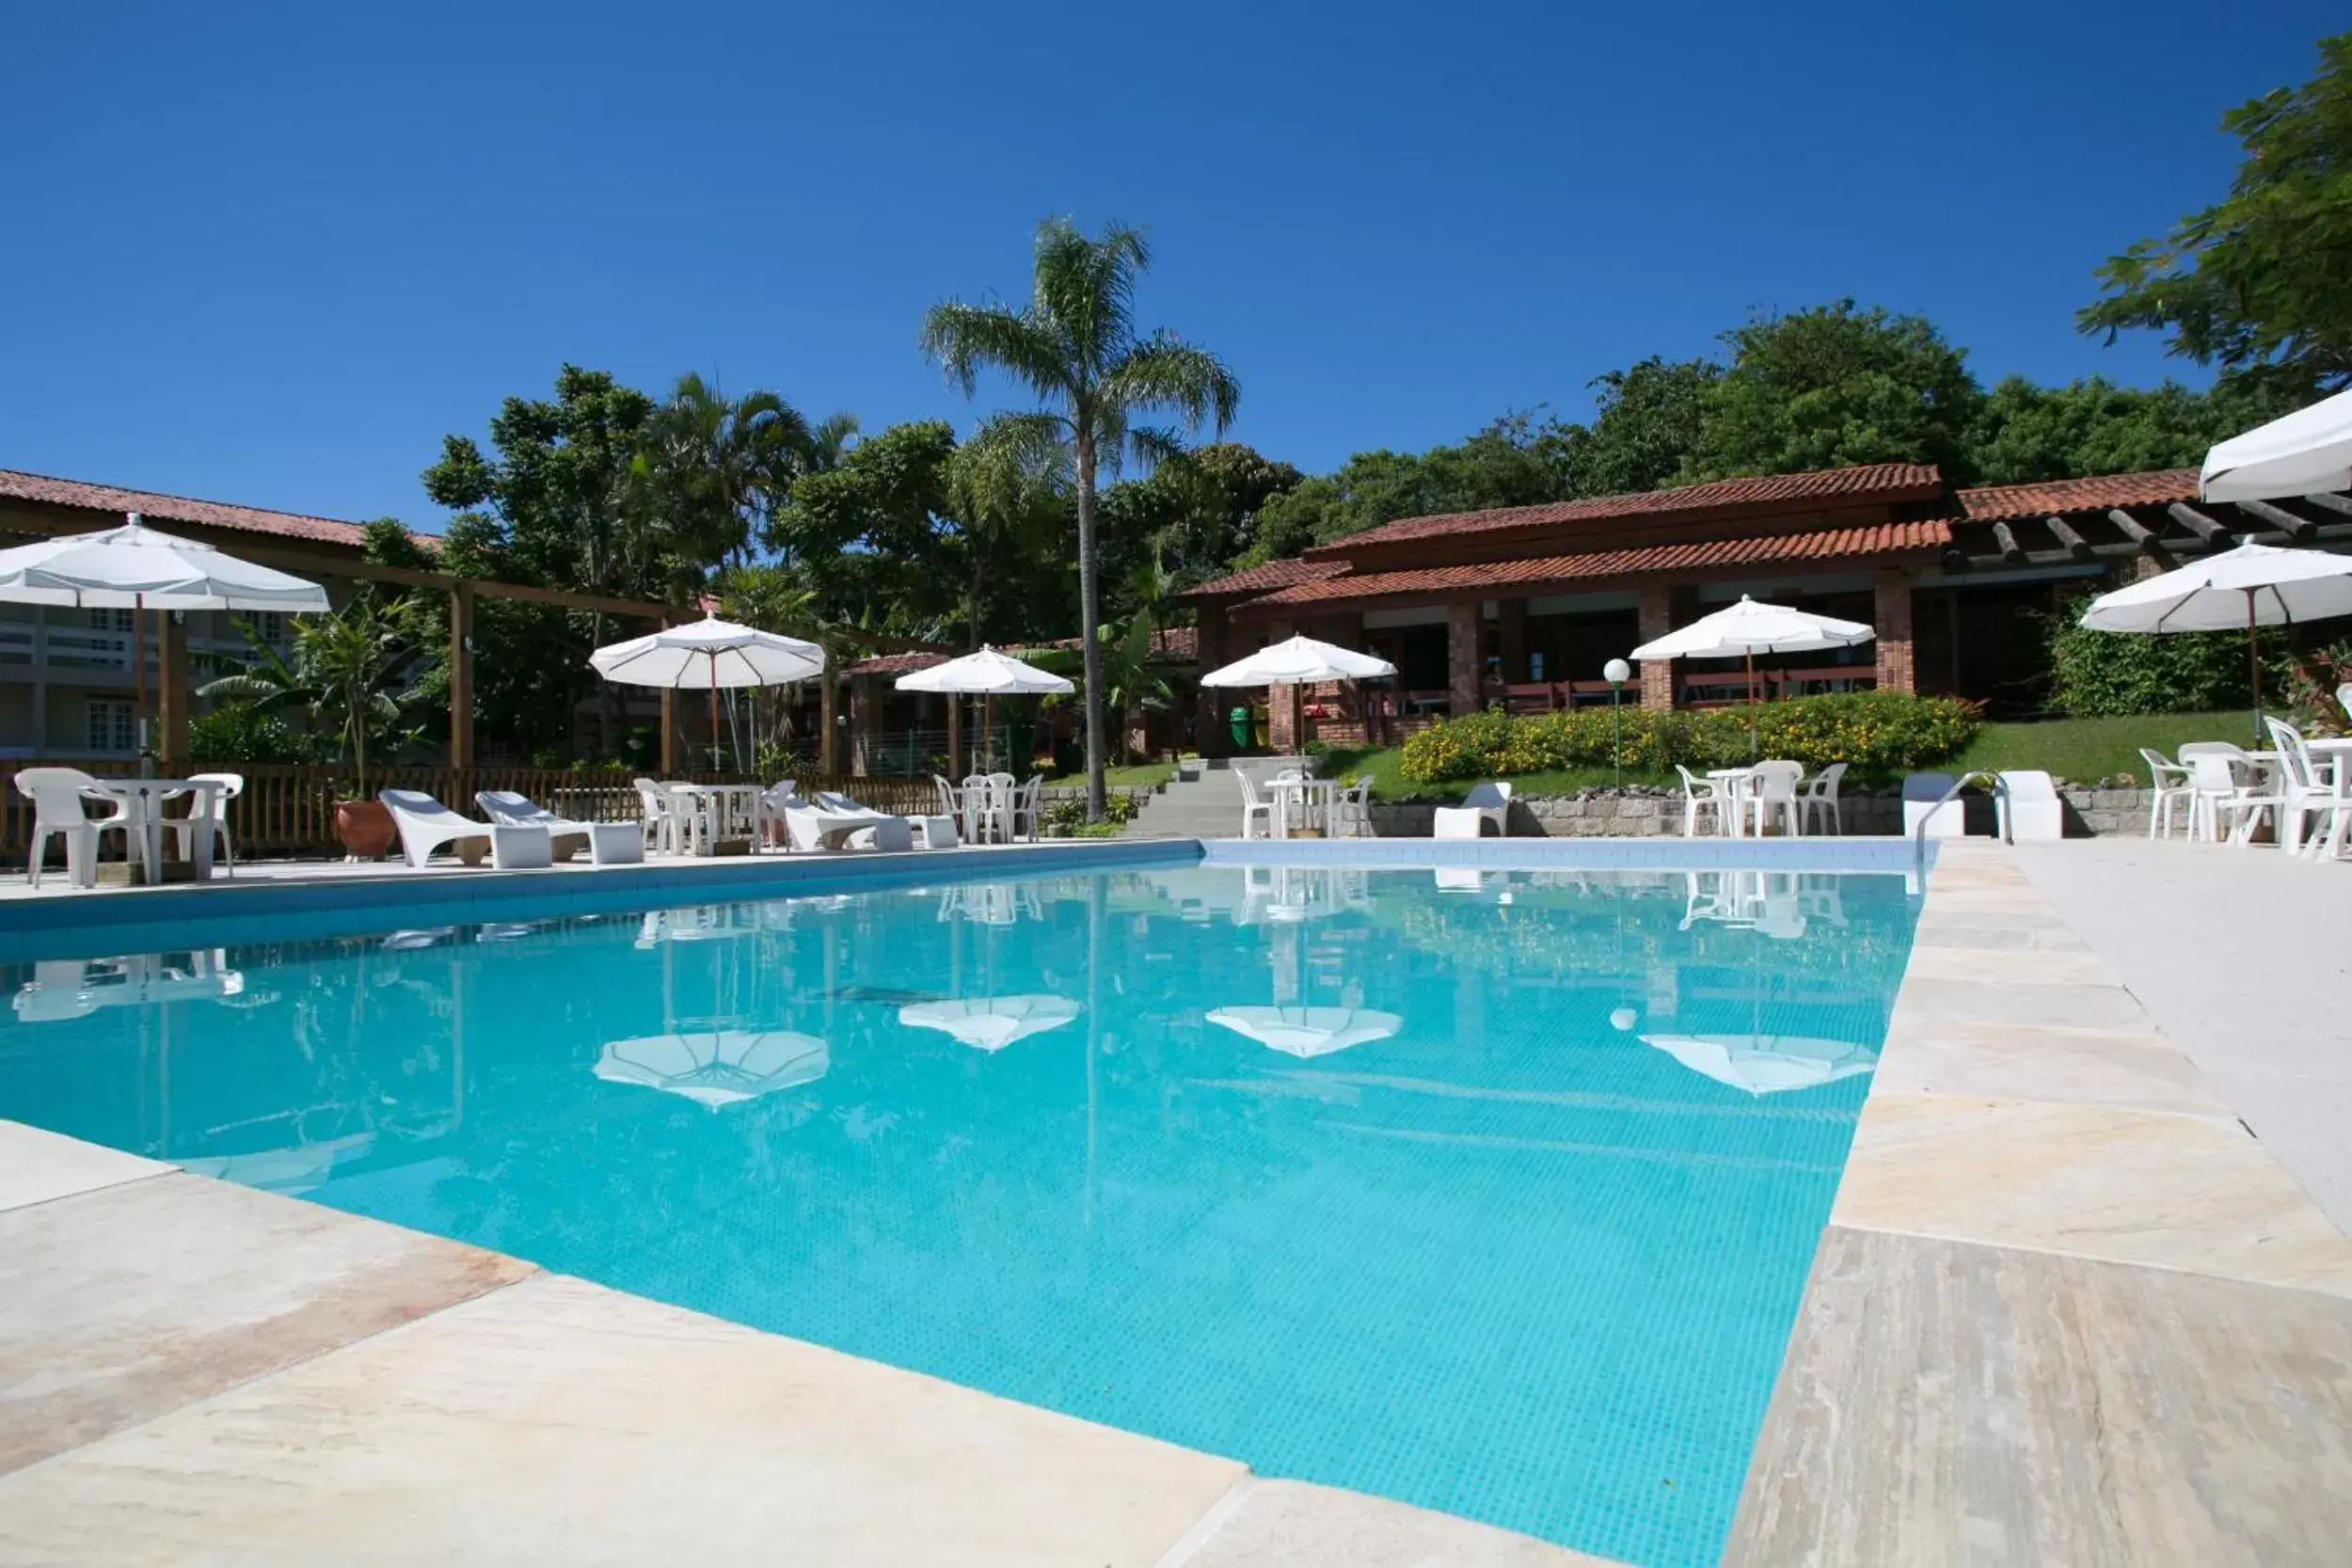 Day, Swimming Pool in Hotel São Sebastião da Praia